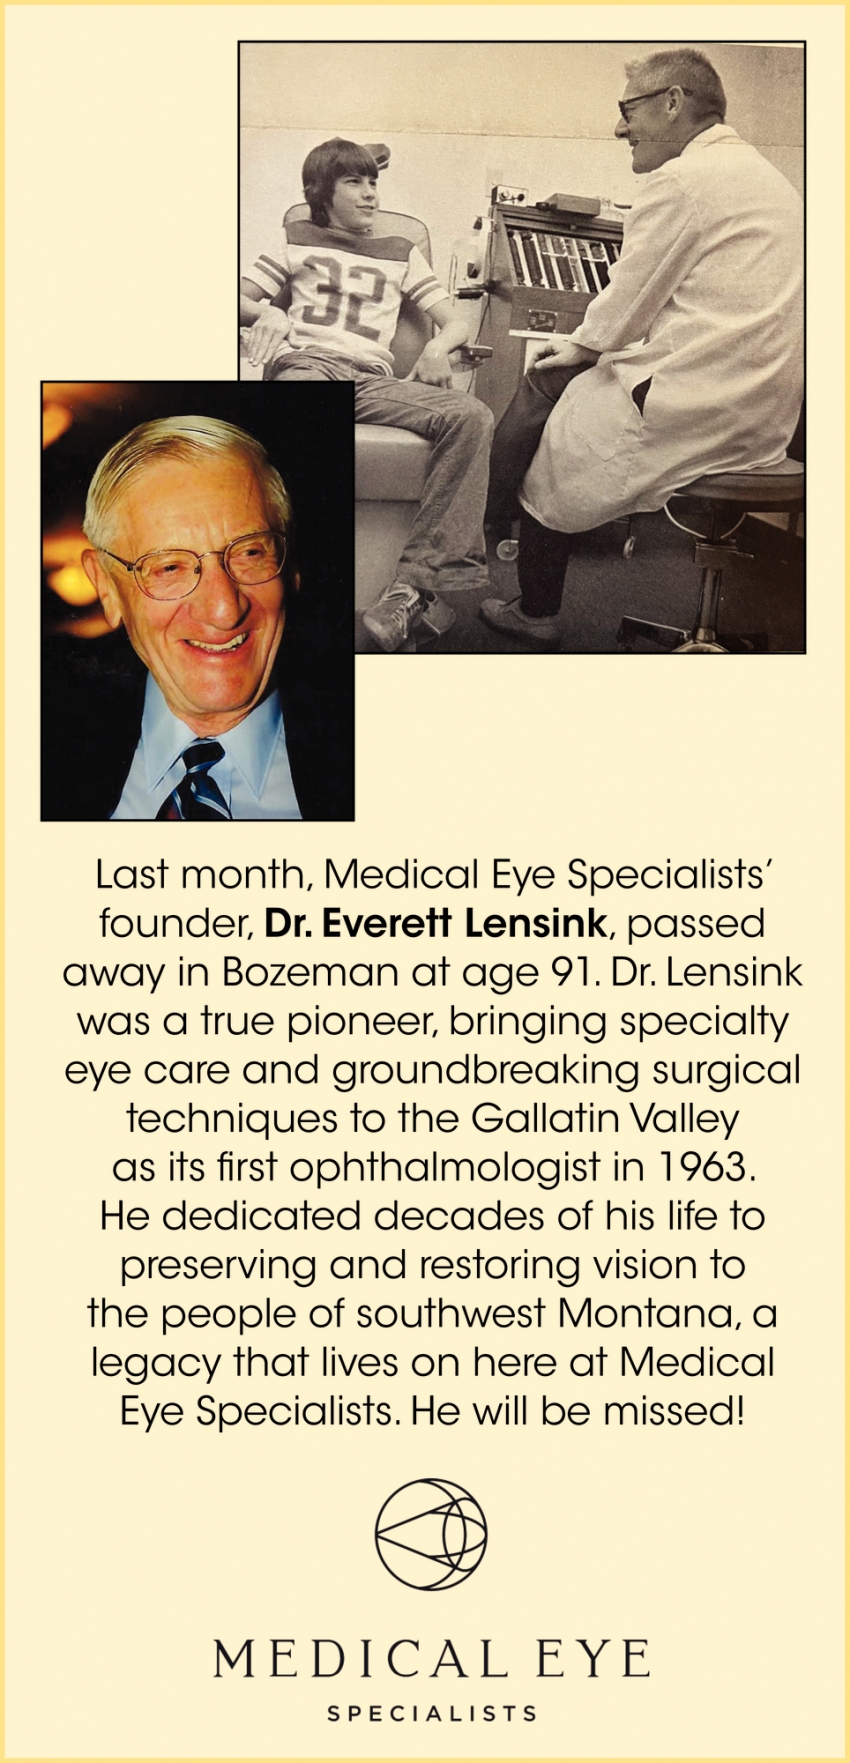 Dr. Everett Lensink